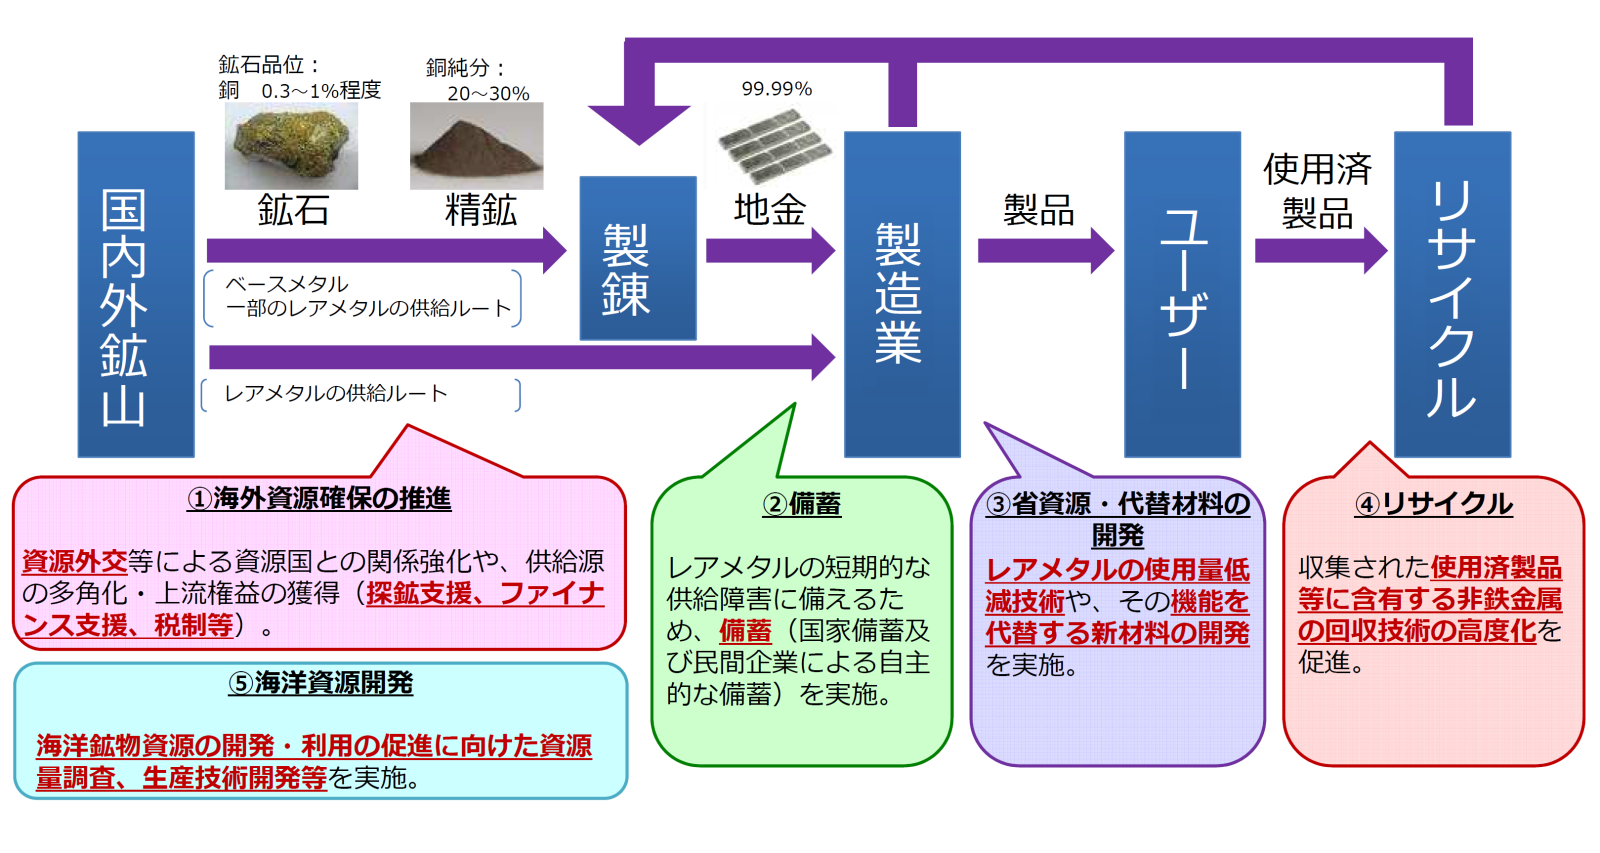 鉱物資源の生産からリサイクルまでの流れと、政策の5本柱を示した図です